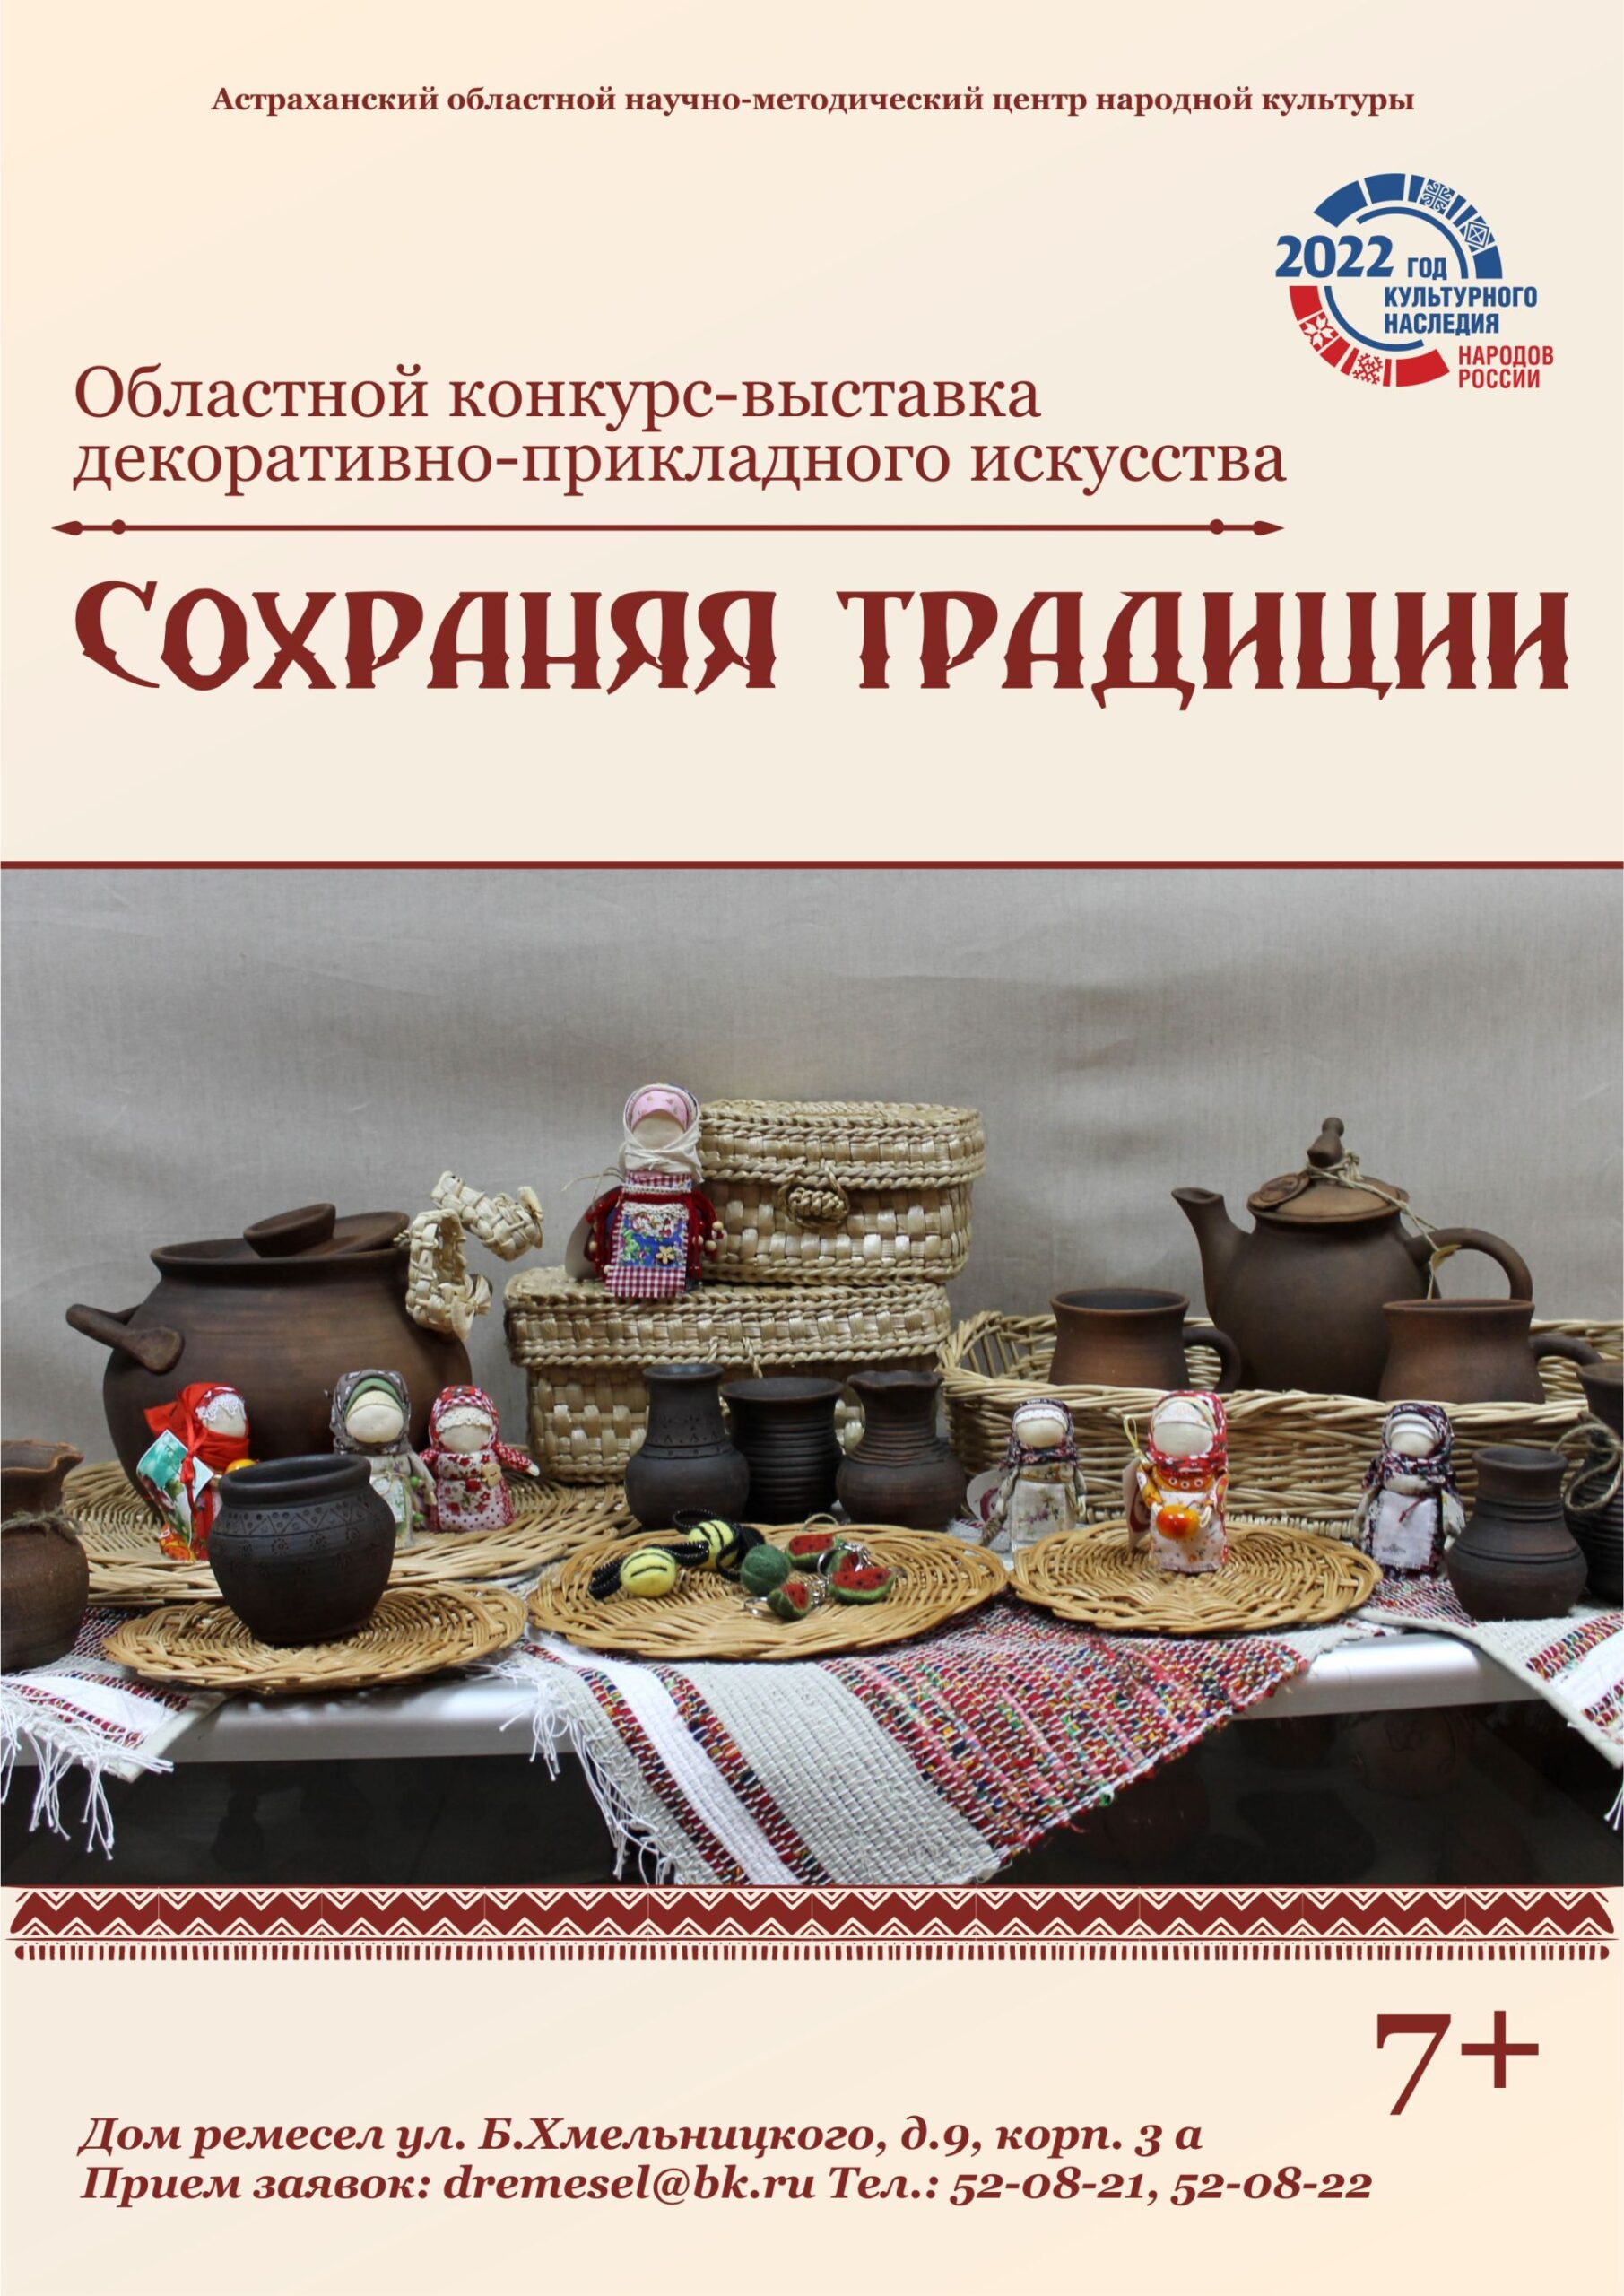 В Астрахани объявлен областной конкурс-выставка национального декоративно-прикладного искусства «Сохраняя традиции»